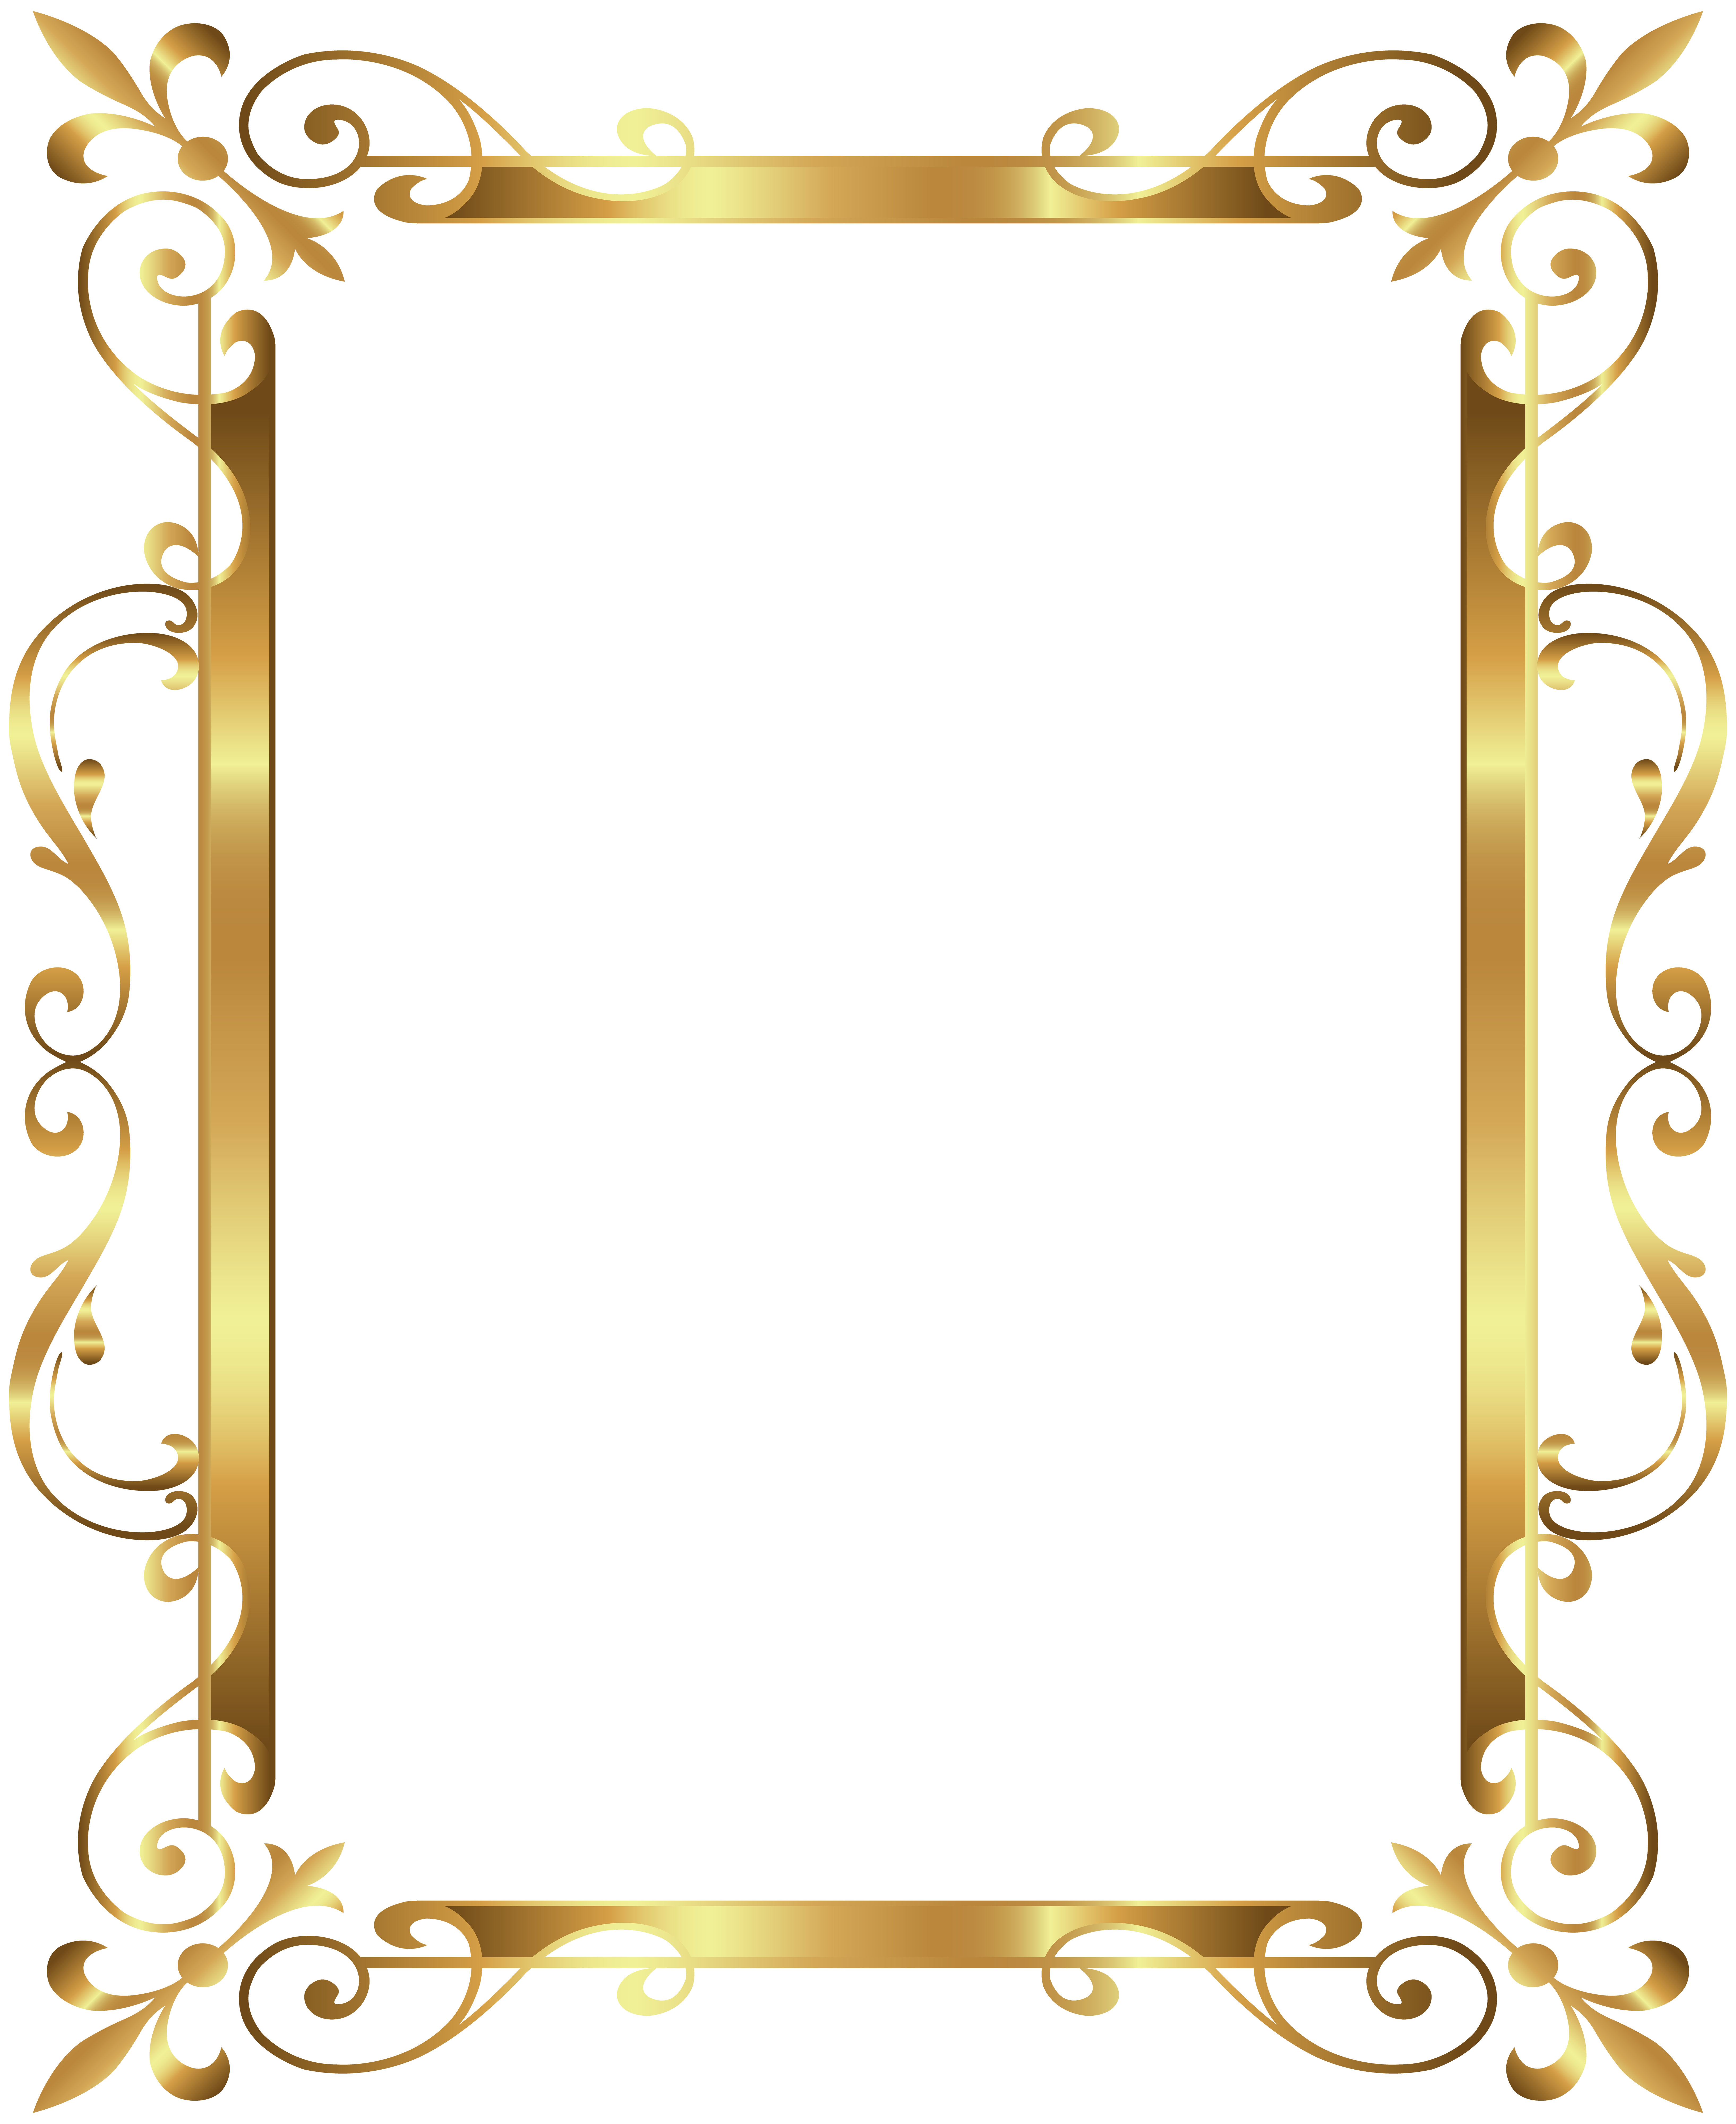 Gold frame Clip art - Gold Border Frame Deco Transparent Clip Art Image